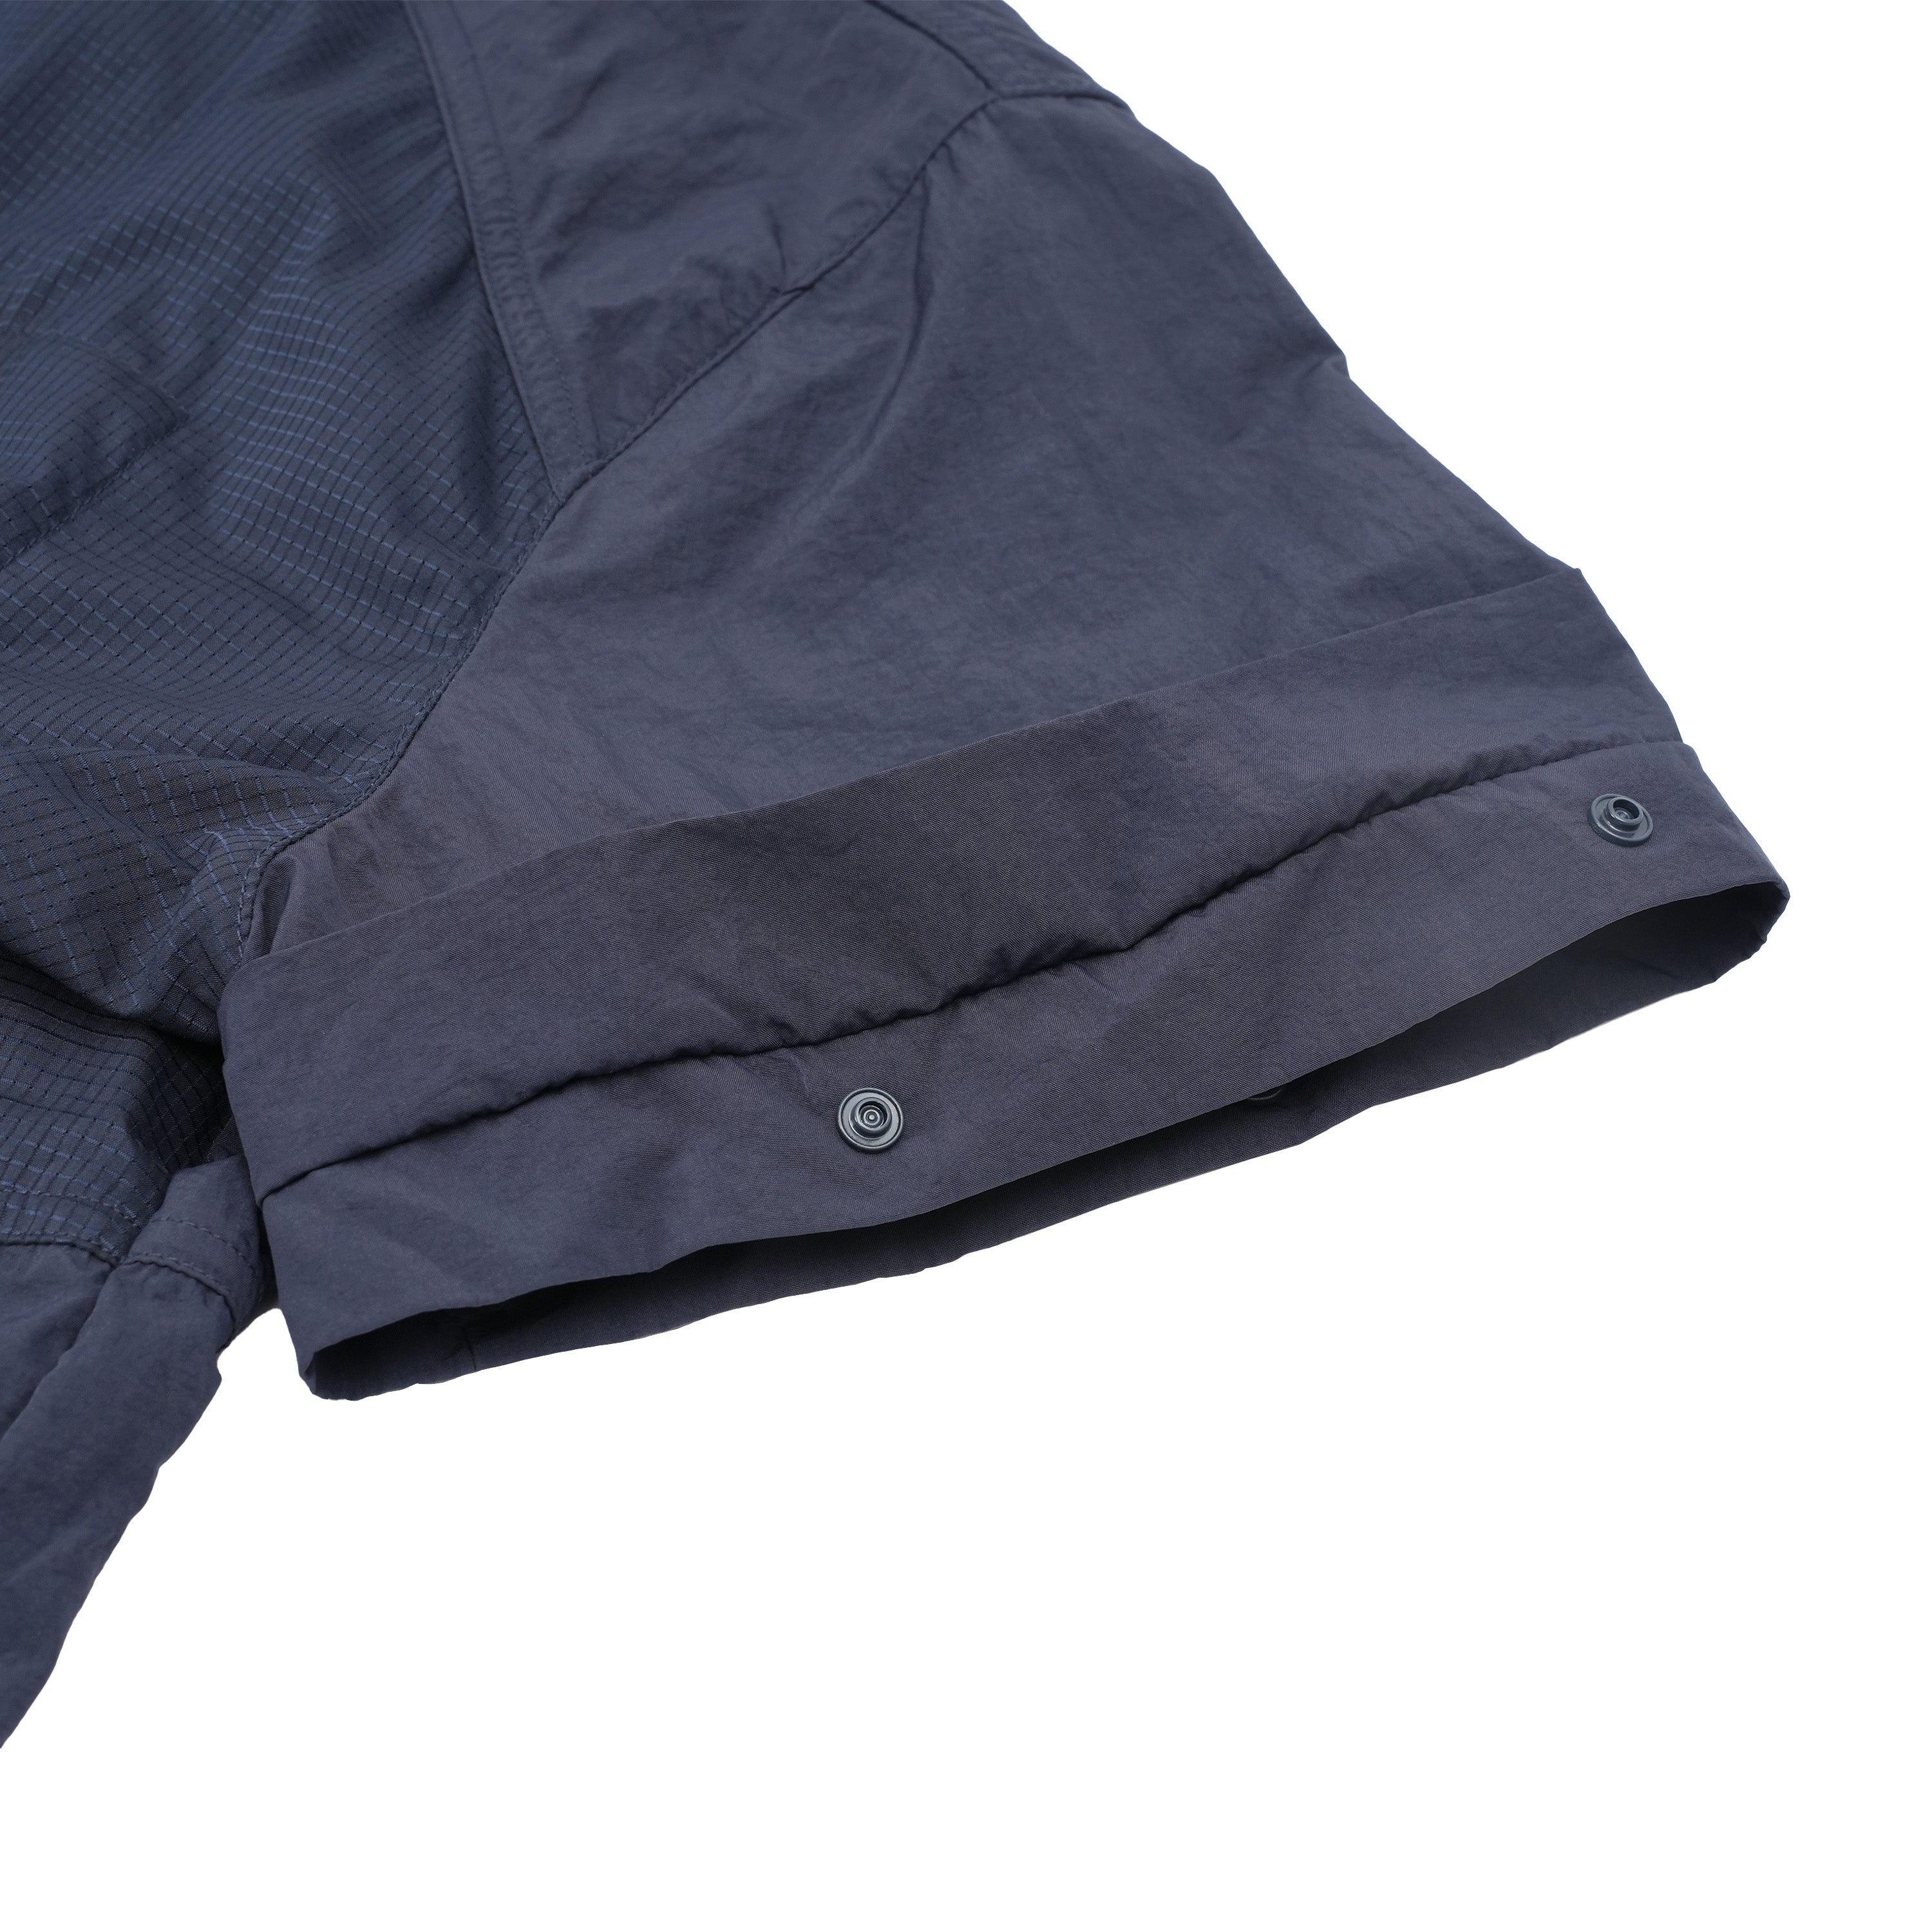 Exway Outdoor Lightweight Waterproof Jacket